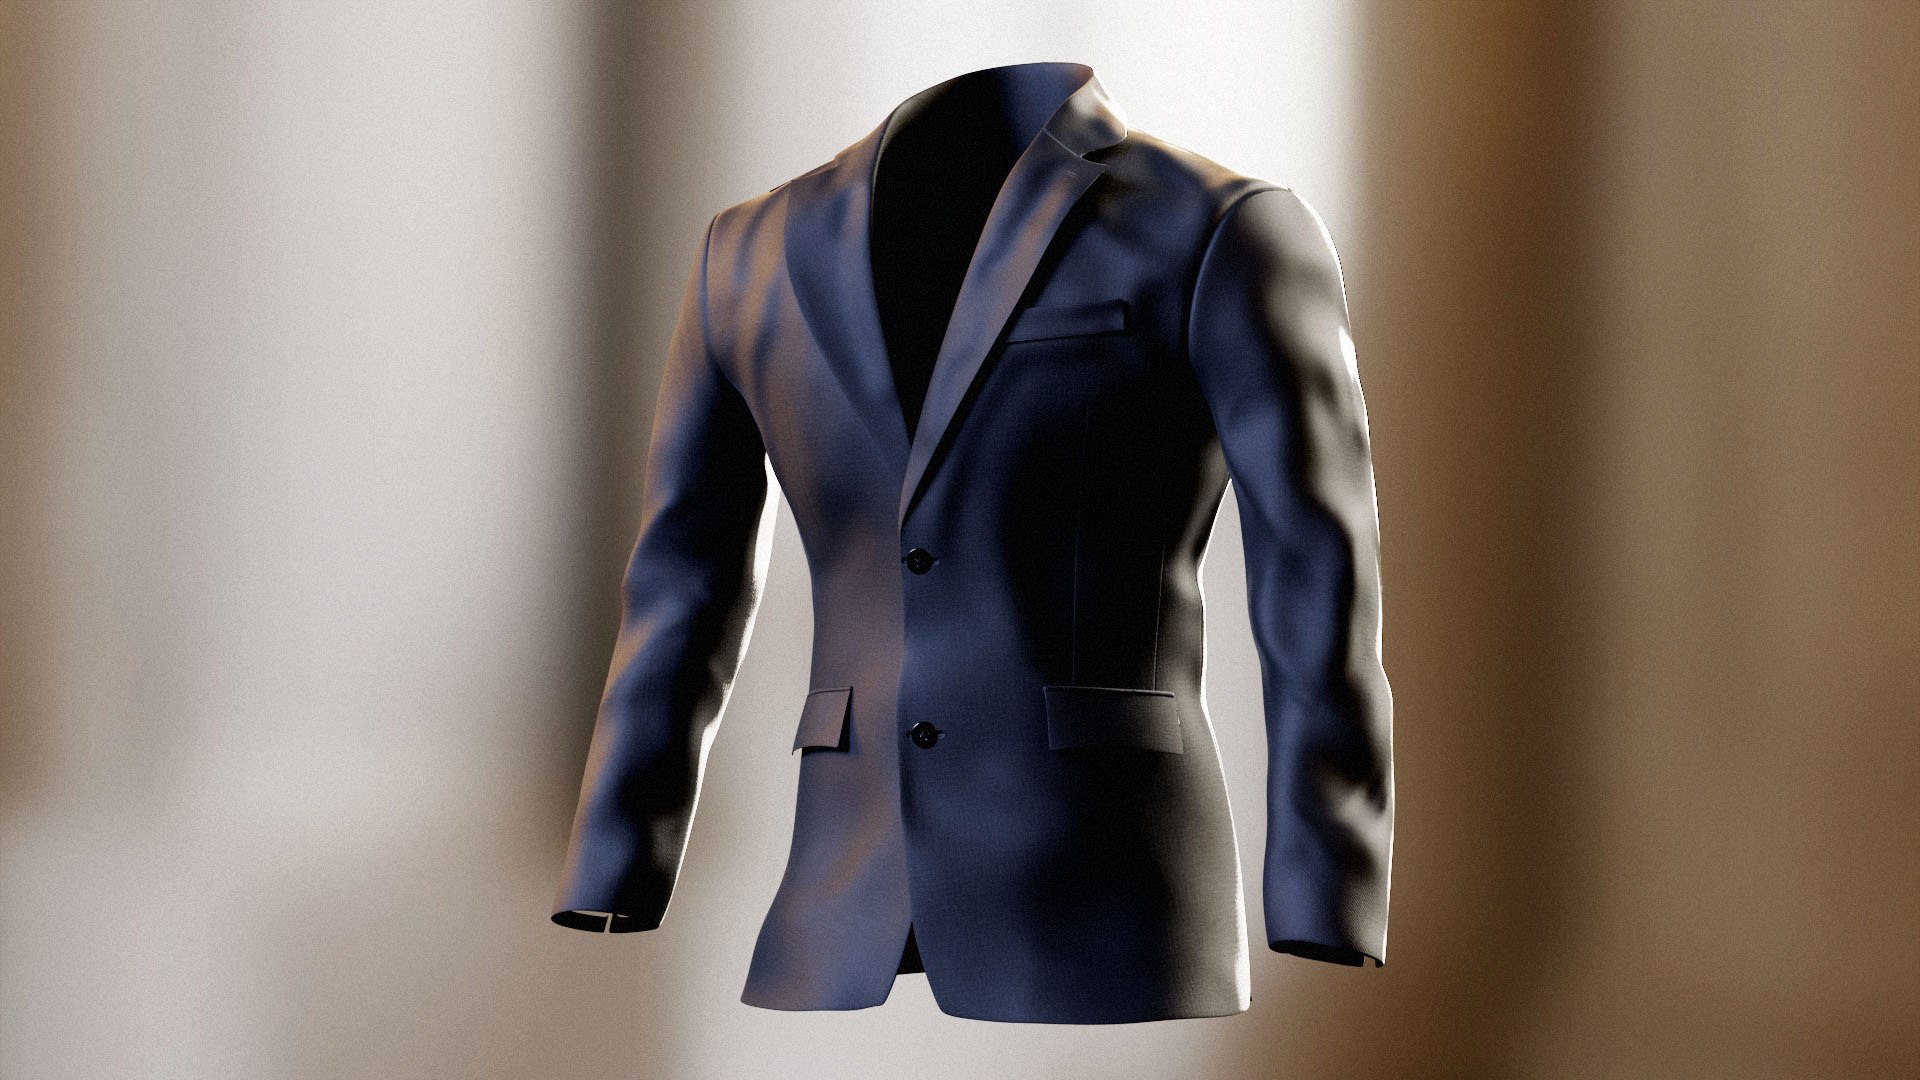 Suit Jacket 3D model - TurboSquid 2053212